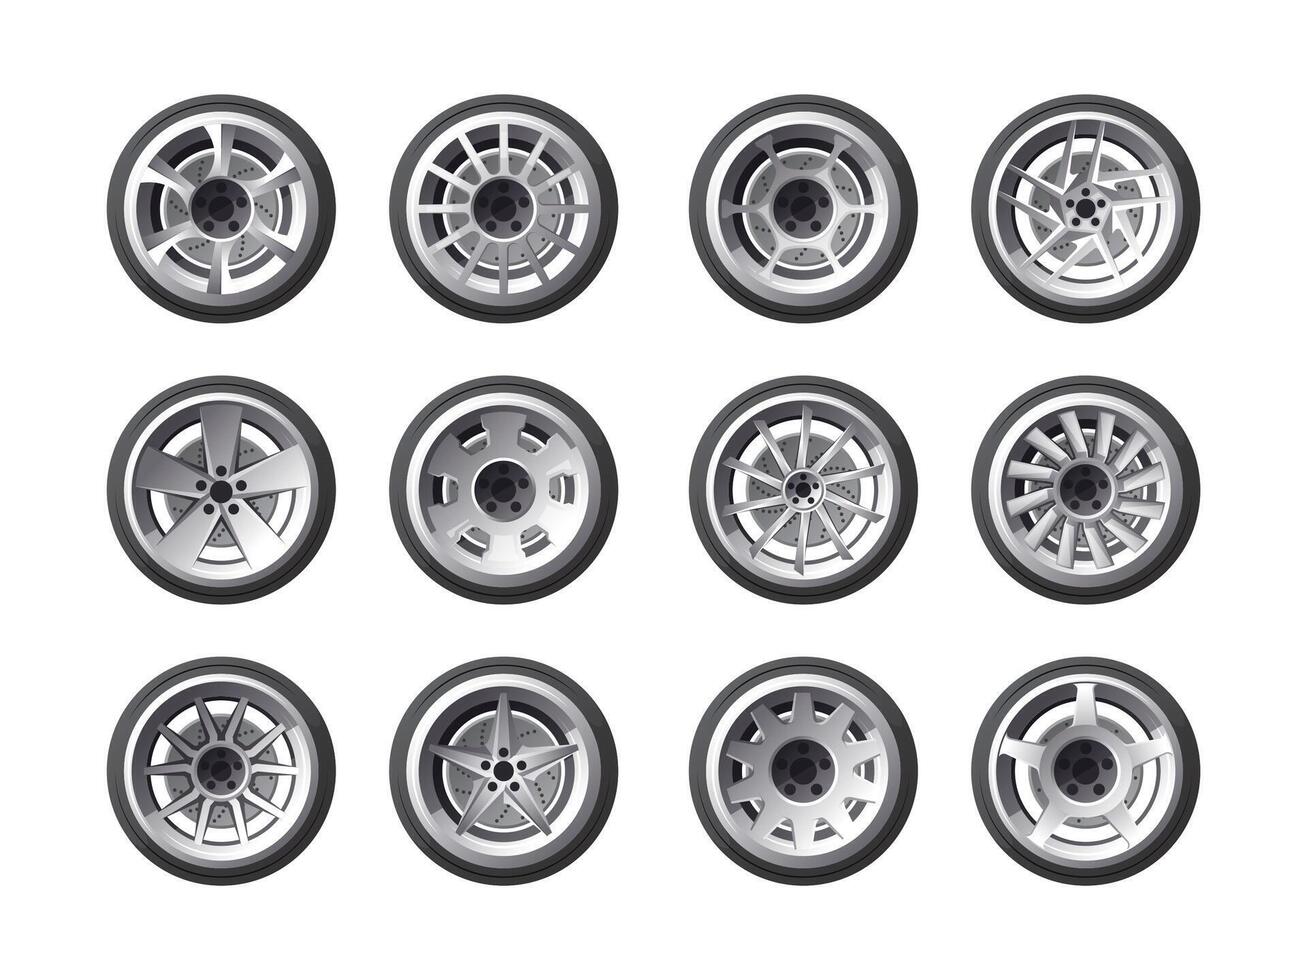 Karikatur Auto Räder. runden Auto Räder mit Reifen Gummi und Felgen, Automobil gießen, Stahl, Licht Legierung und Aluminium Räder. Vektor isoliert einstellen